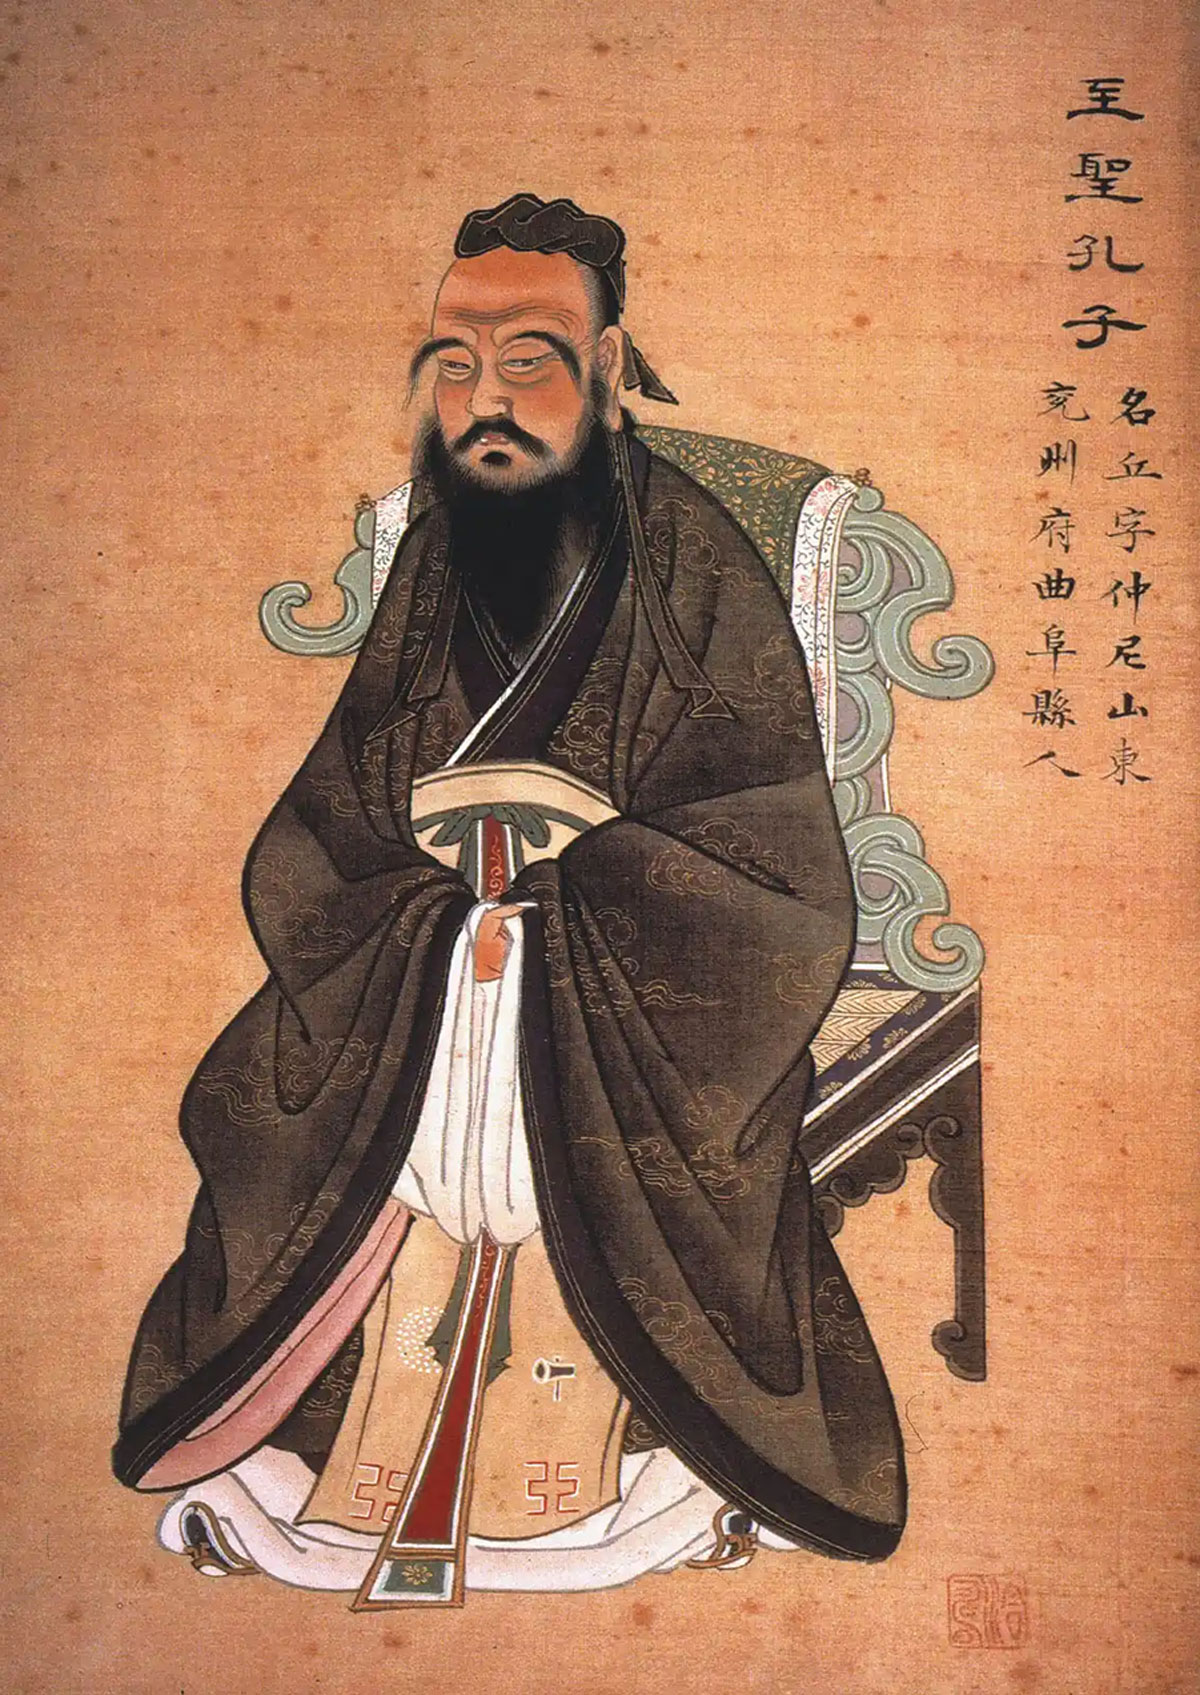 Confucius circa 1770